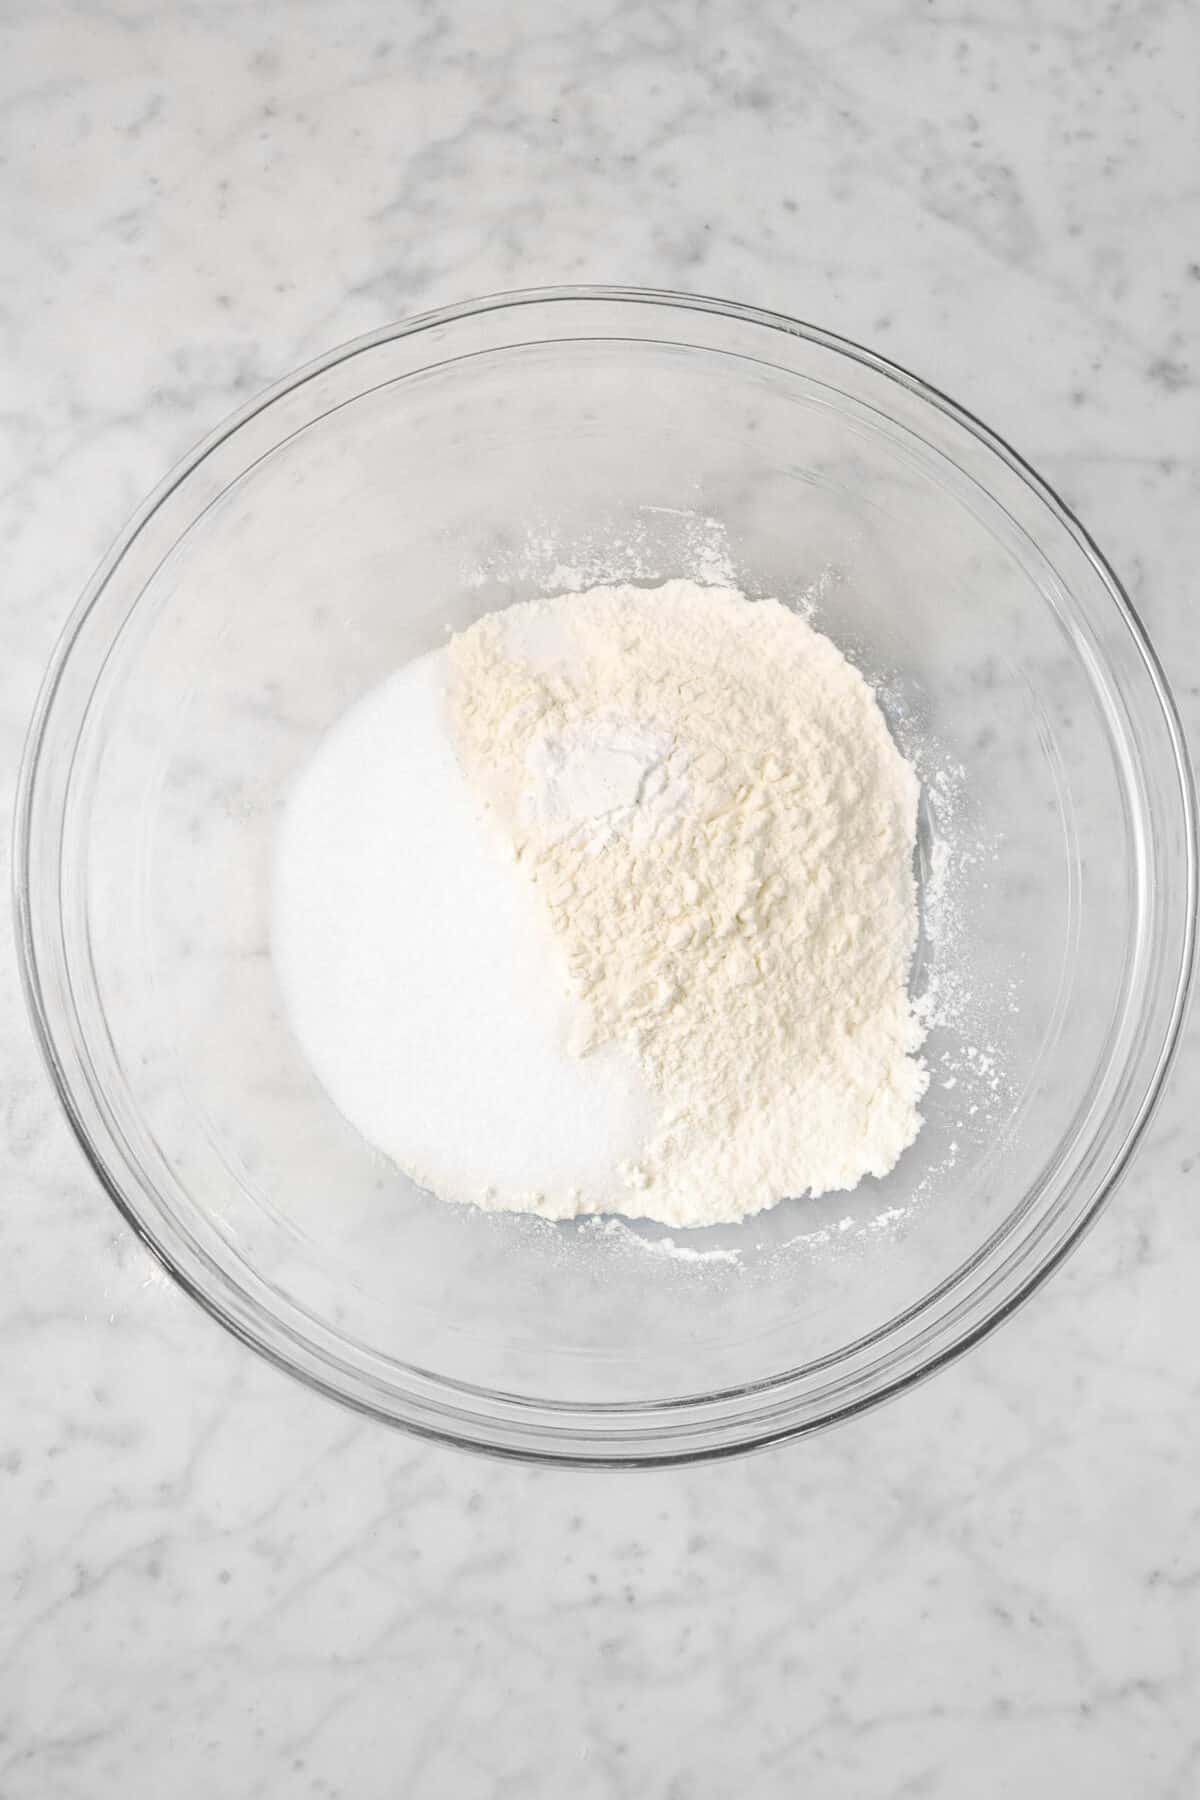 flour, sugar, salt, and baking powder in a glass bowl